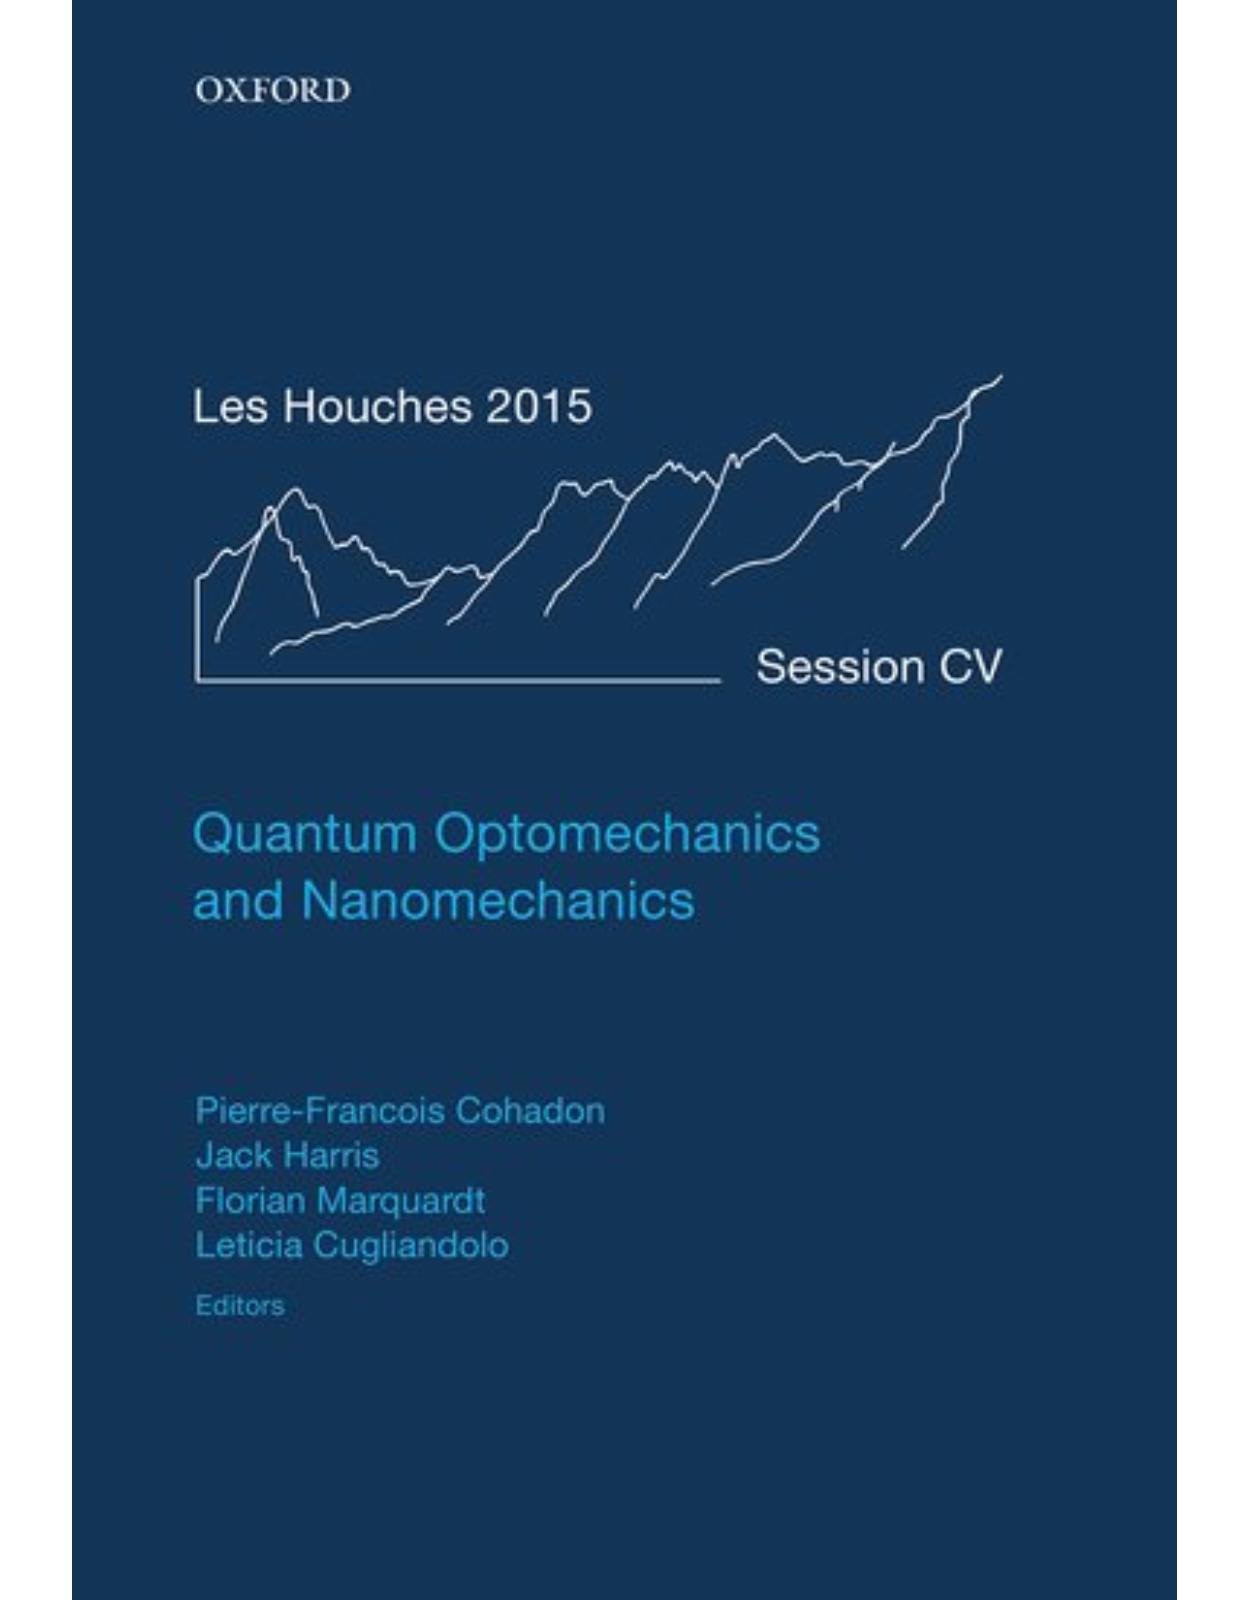 Quantum Optomechanics and Nanomechanics